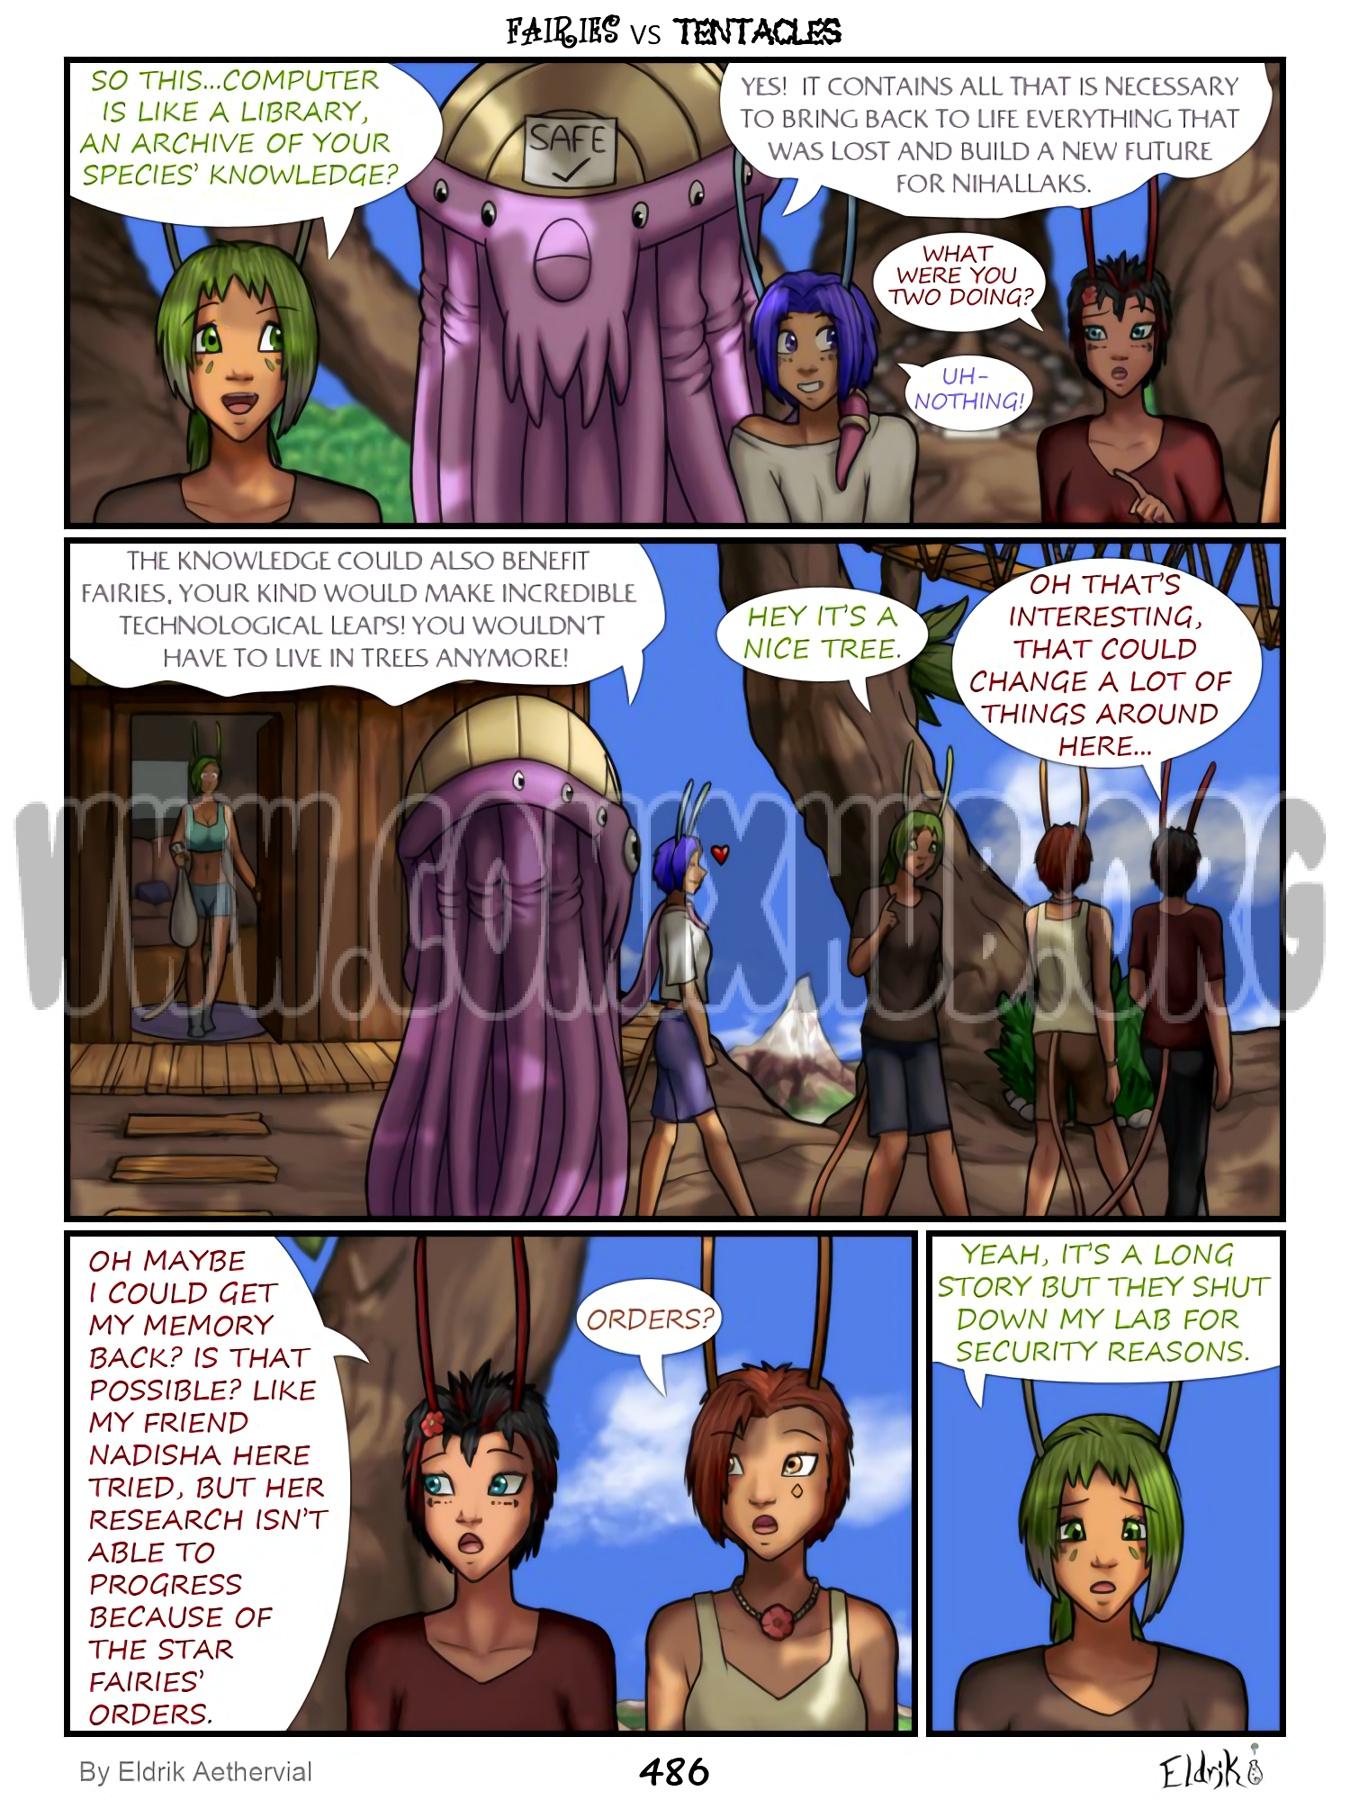 Fairies vs Tentacles 6-7 sex comics Fantasy